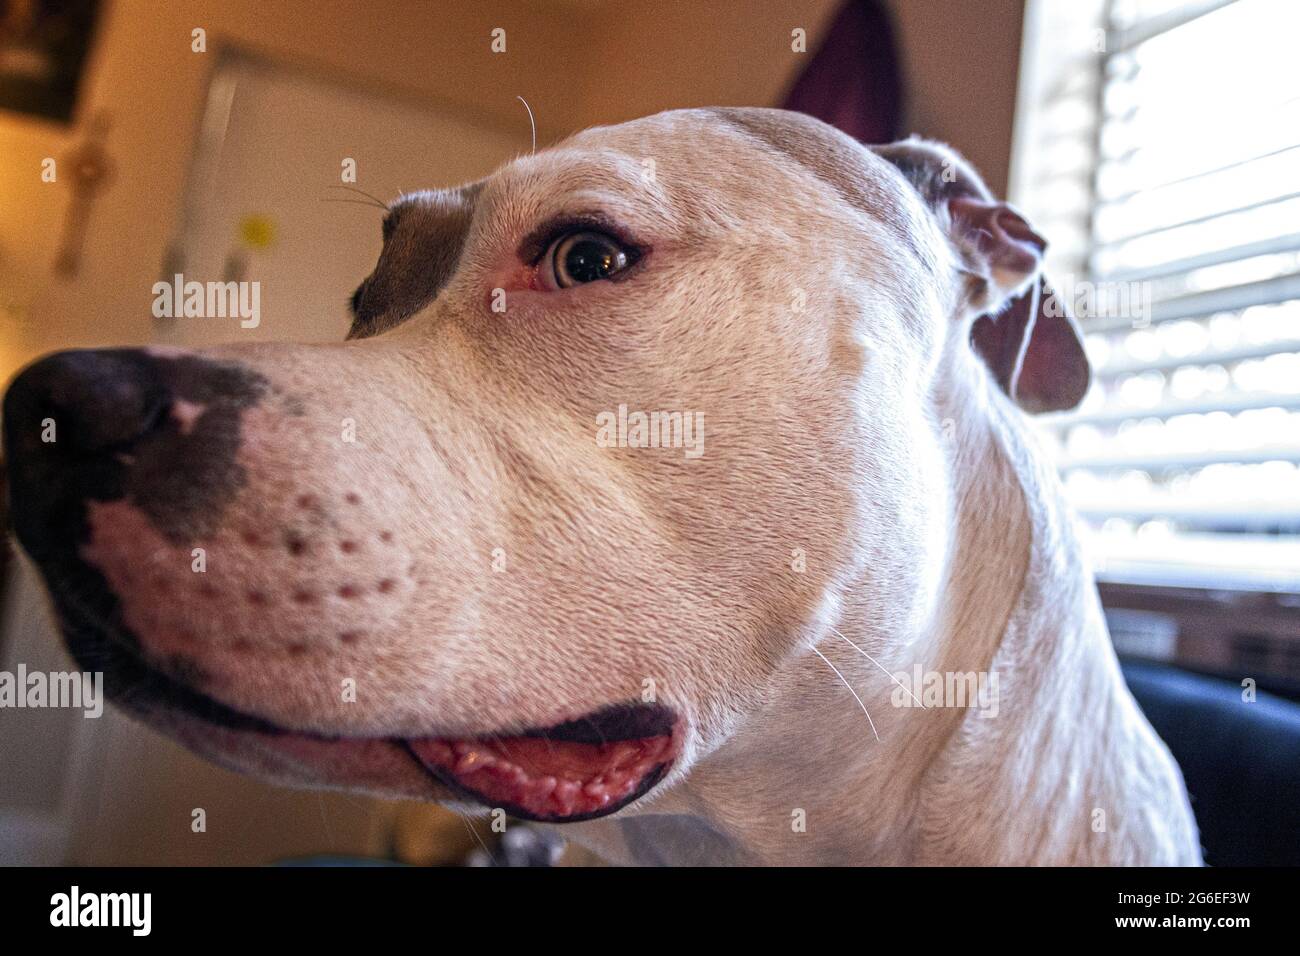 Gros plan avec un grand angle d'un chien mixte (American Staffordshire Pit Bull Terrier et American Pit Bull Terrier) (Canis lupus familiaris) Banque D'Images